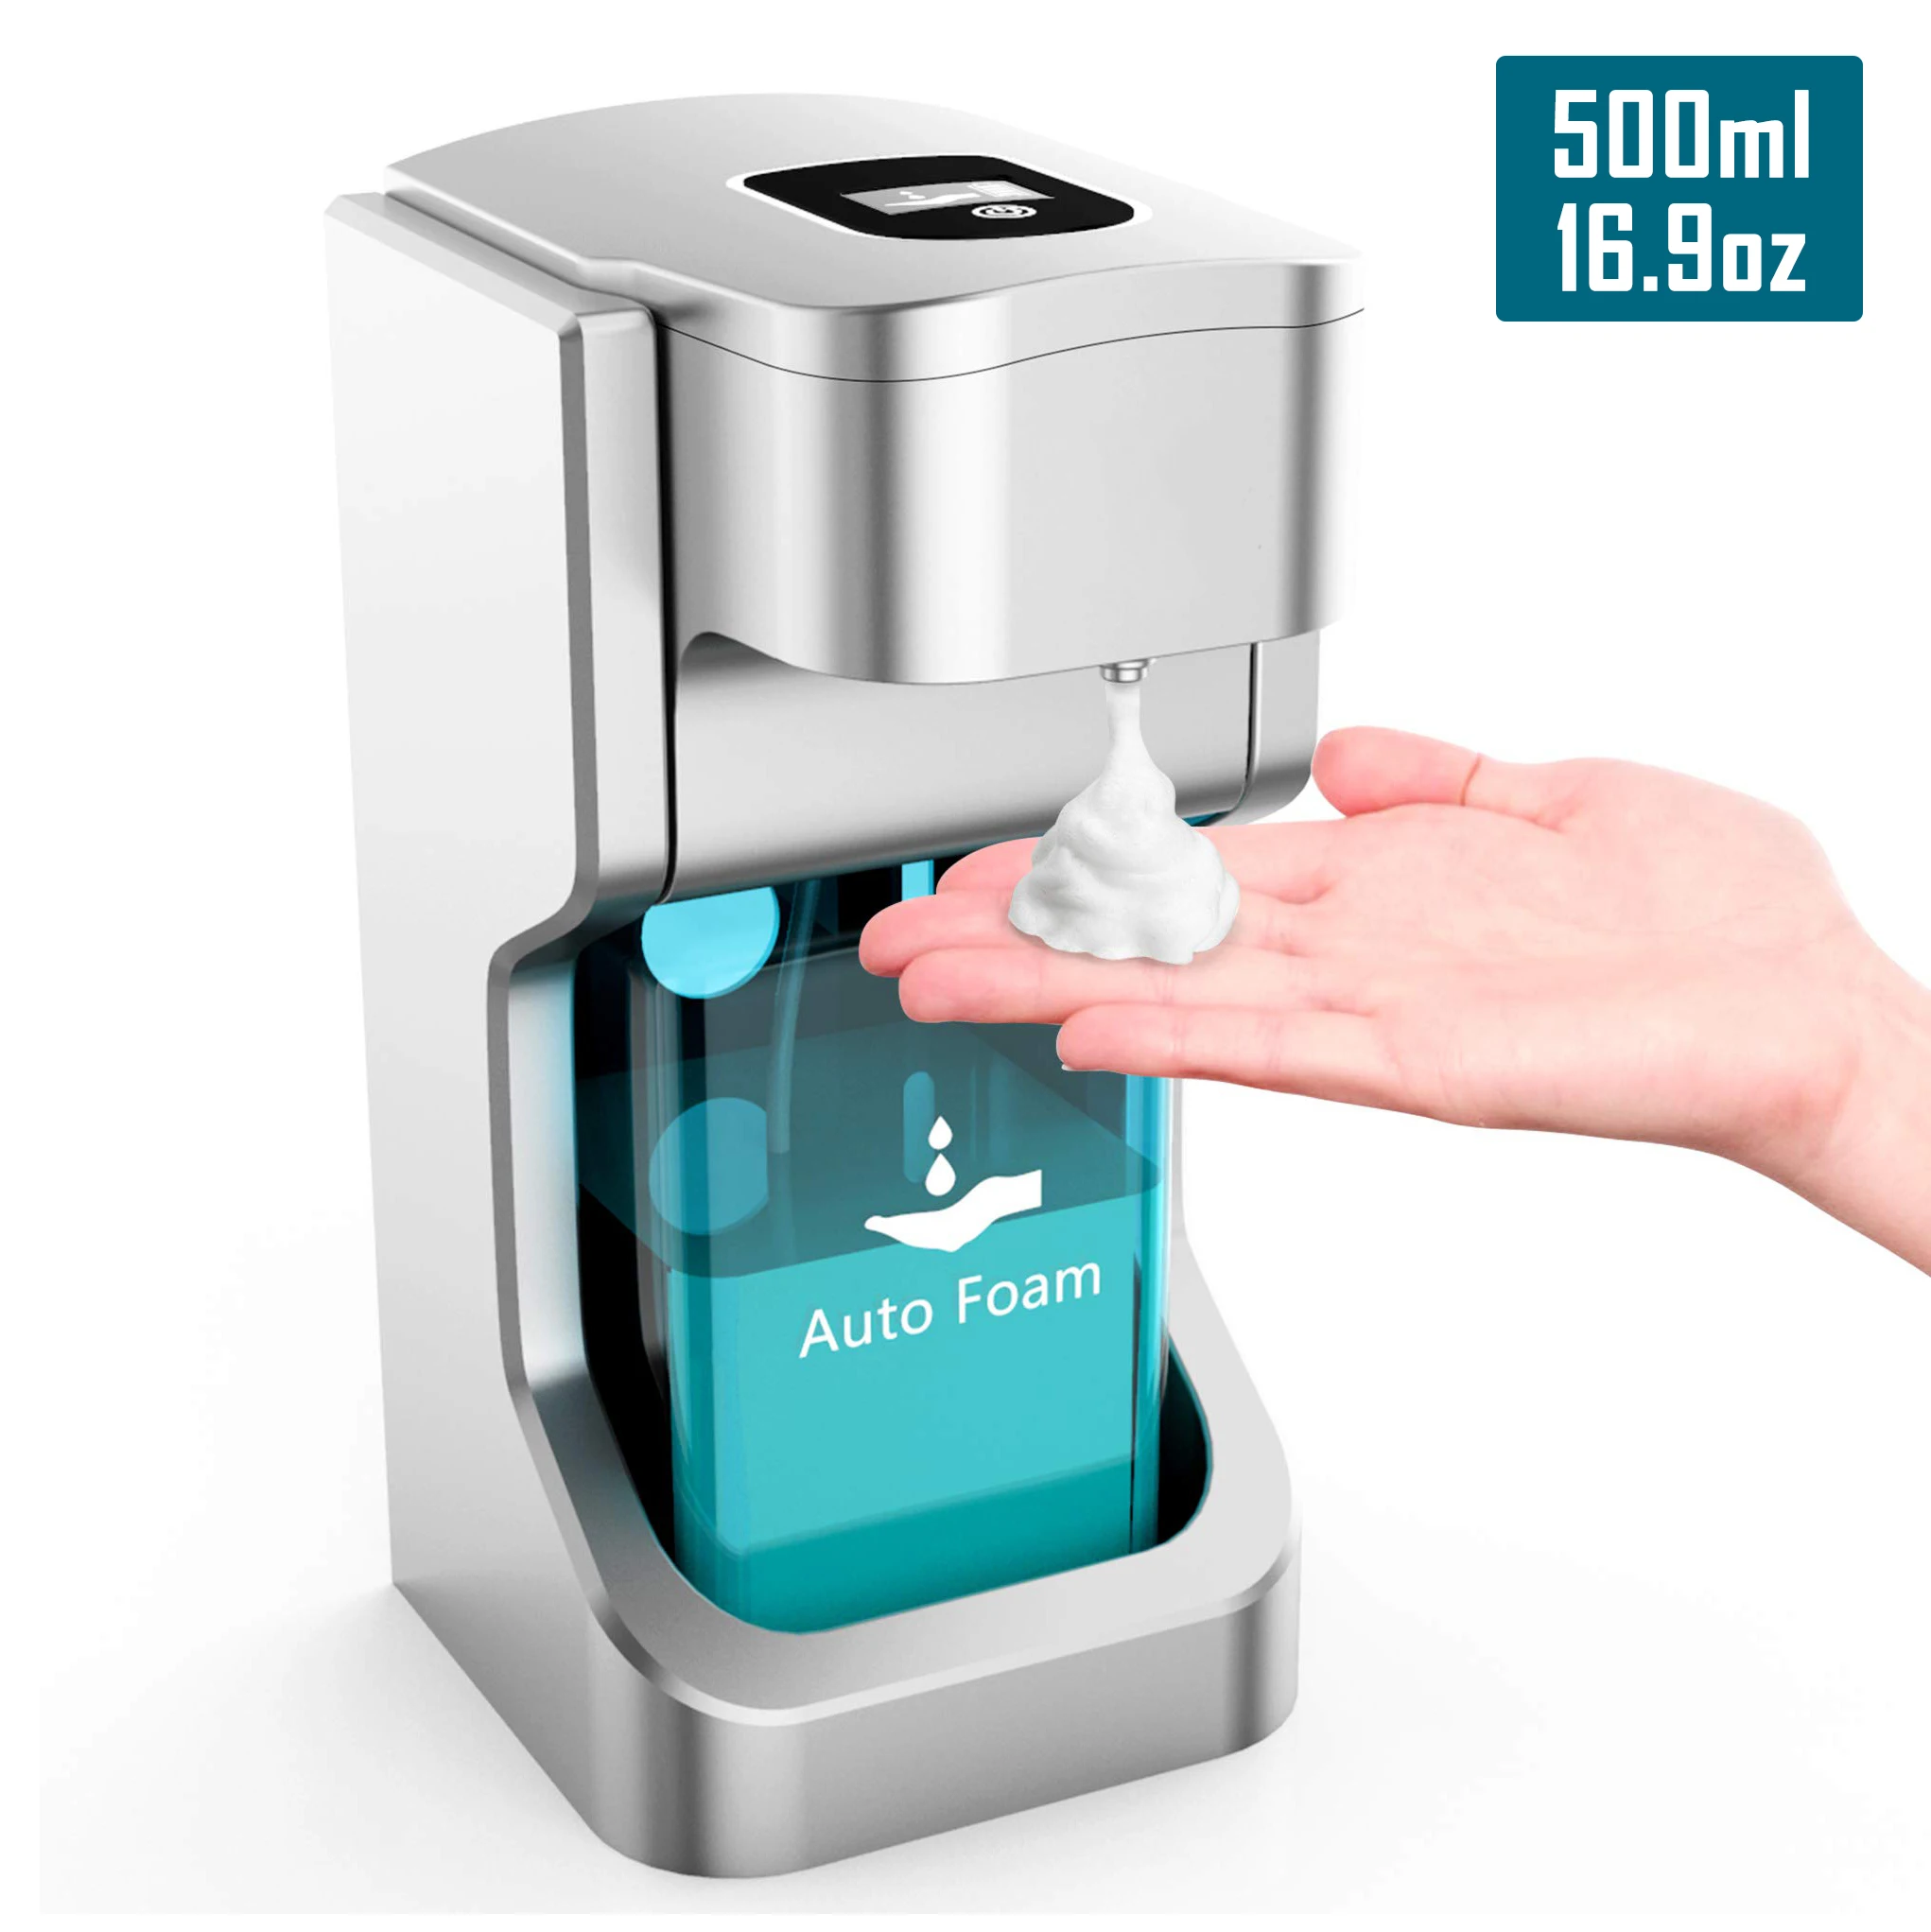 

Интеллектуальный Автоматический Дозатор жидкого мыла, индукционный пенопласт, устройство для мытья рук для кухни, ванной комнаты 500 мл/16,9 у...